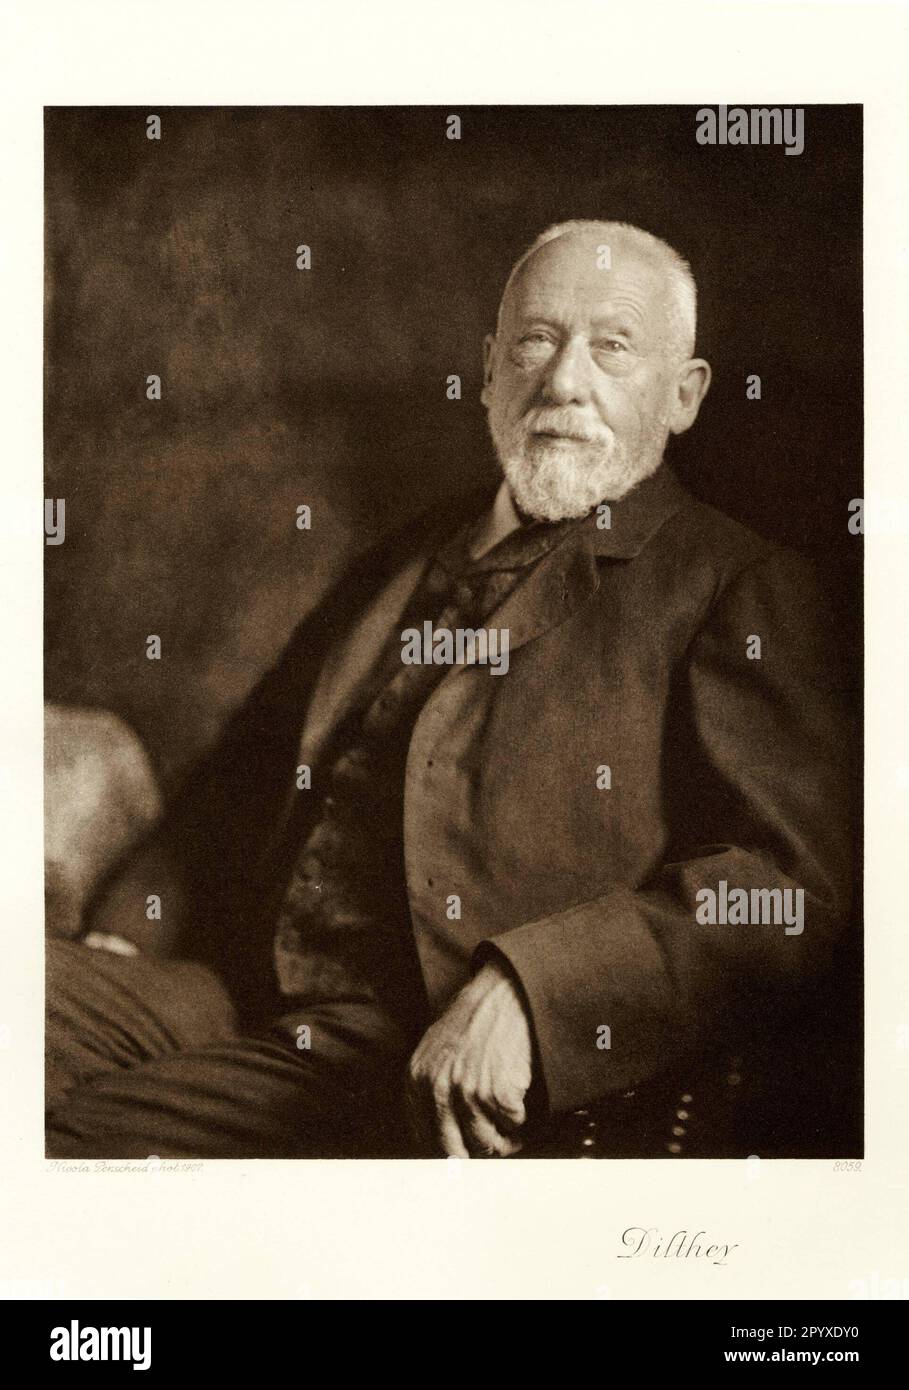 Wilhelm Dilthey (1833-1911), deutscher Philosoph. Foto von Nicola Perscheid von 1907. Foto: Heliogravure, Corpus Imaginum, Hanfstaengl Collection. [Maschinelle Übersetzung] Stockfoto